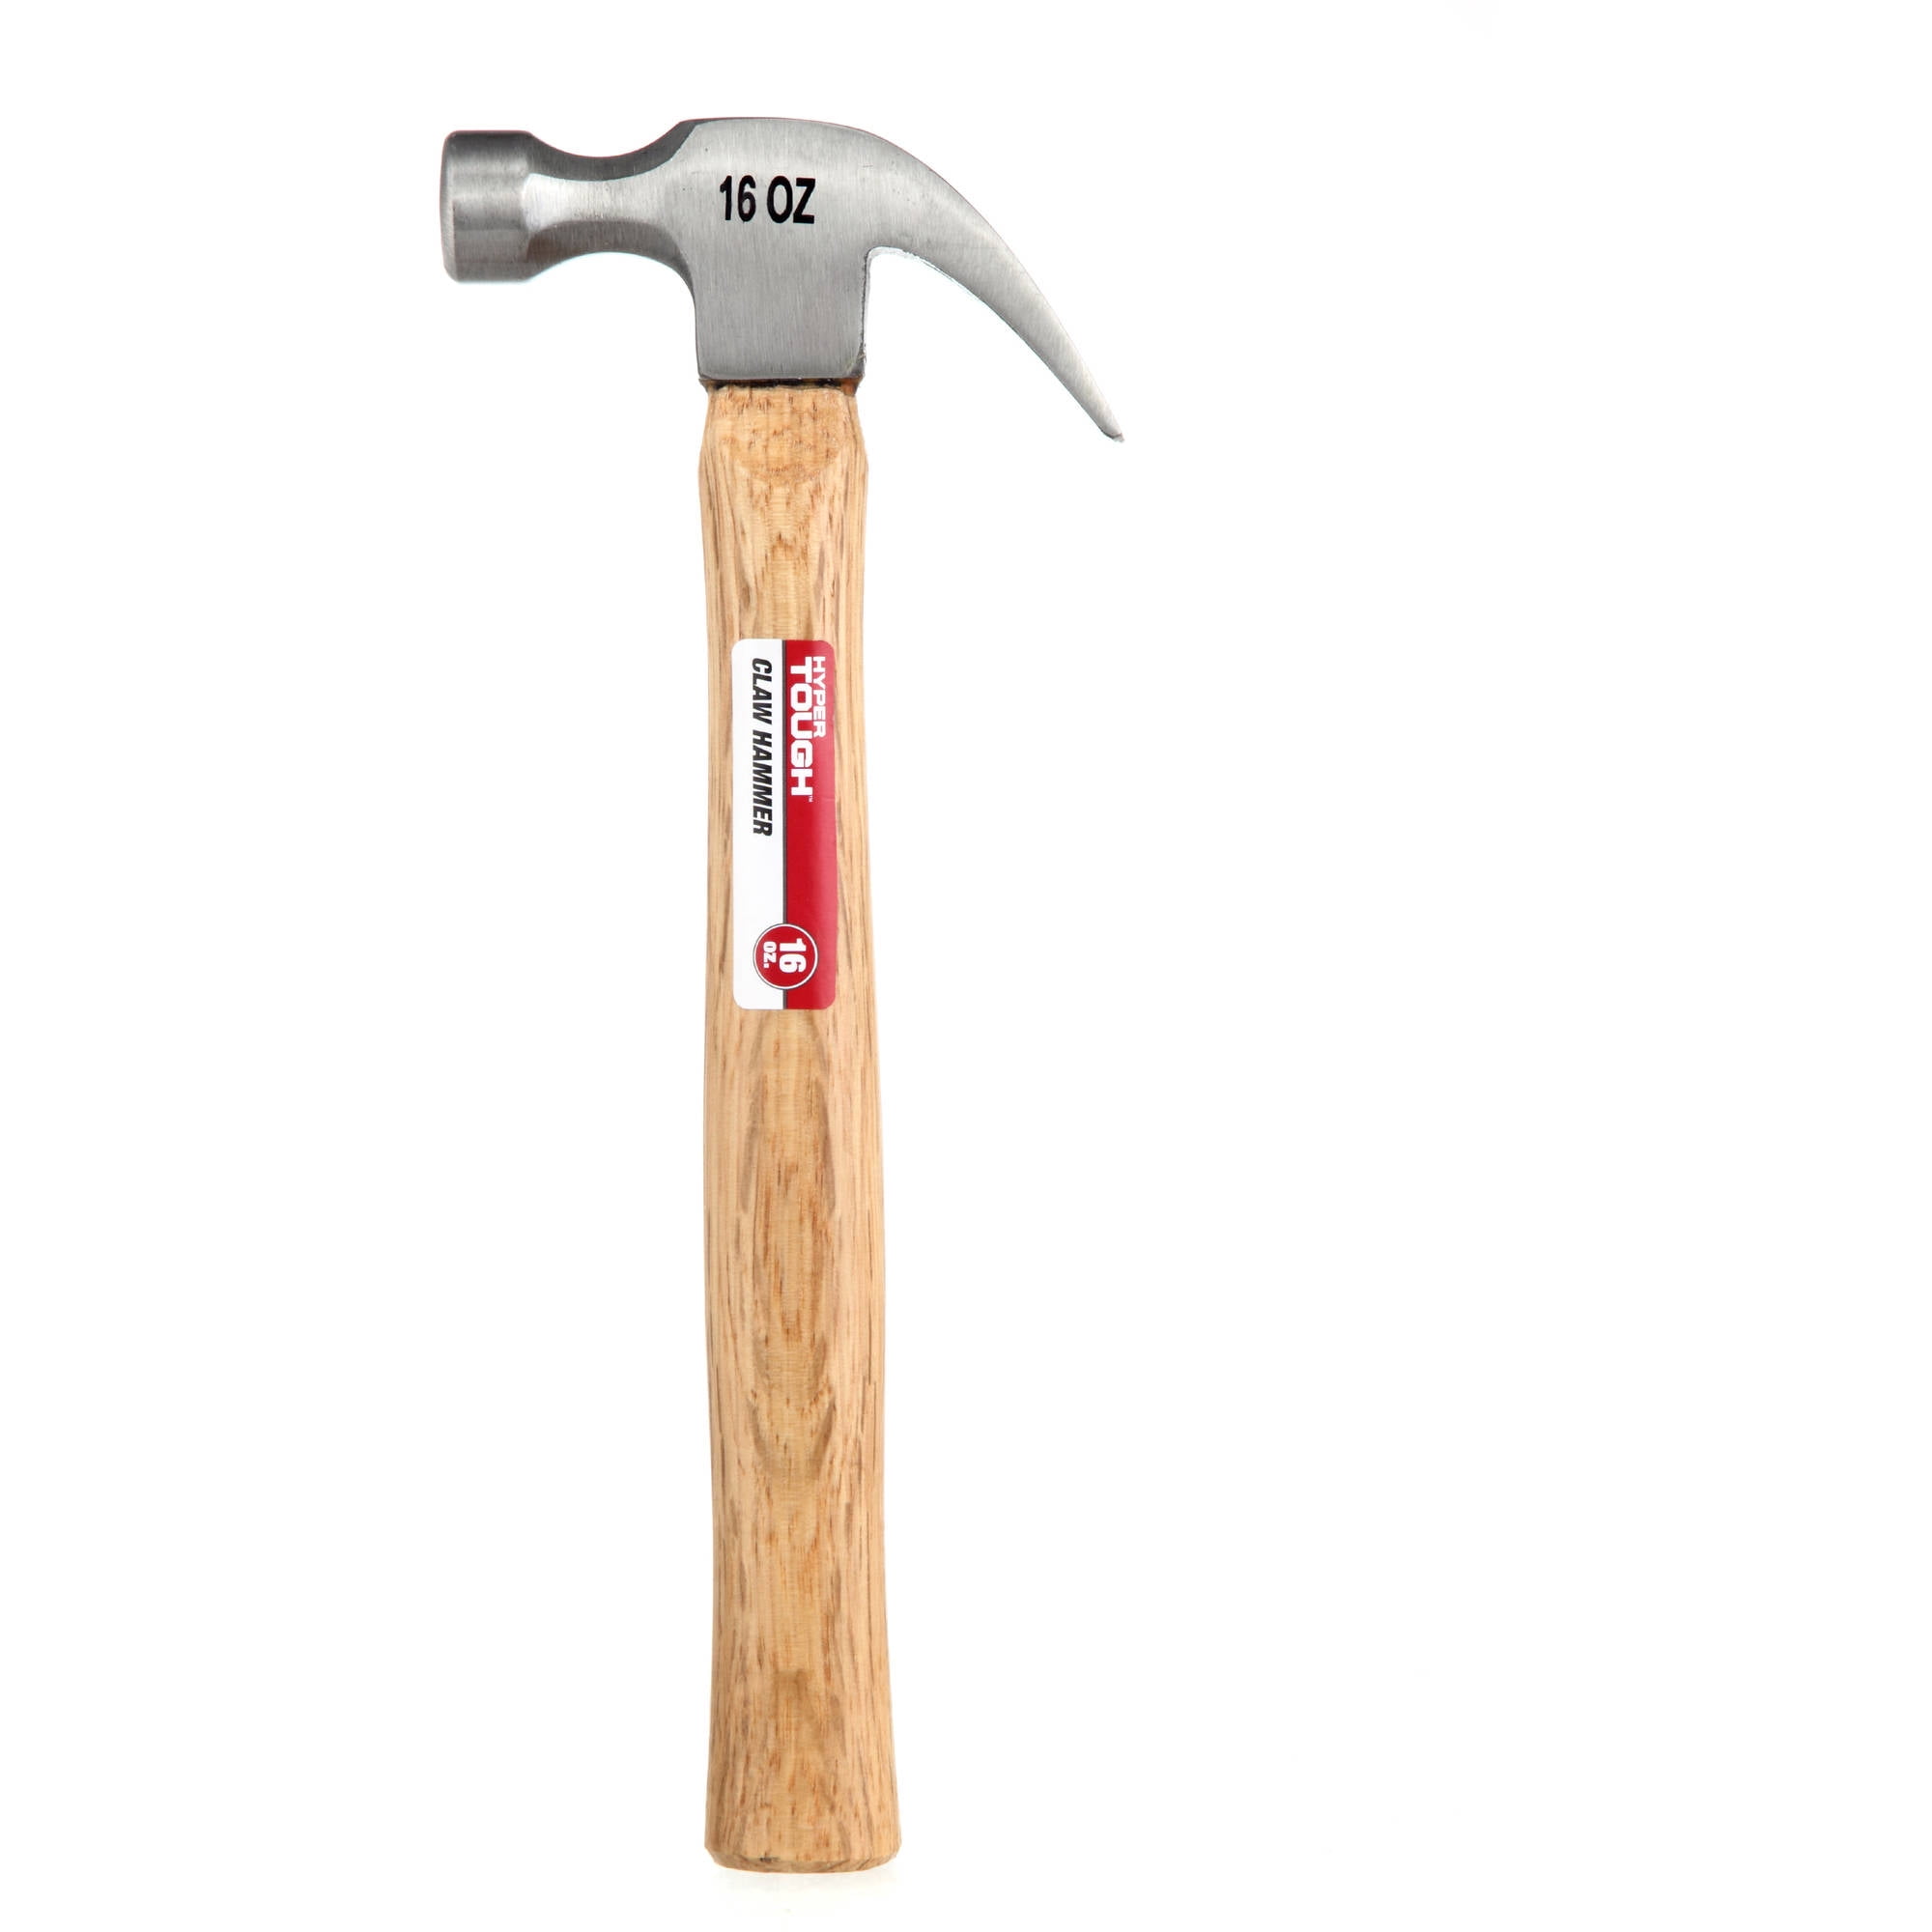 Hyper Tough 20 oz One Piece Claw Hammer TH20219A